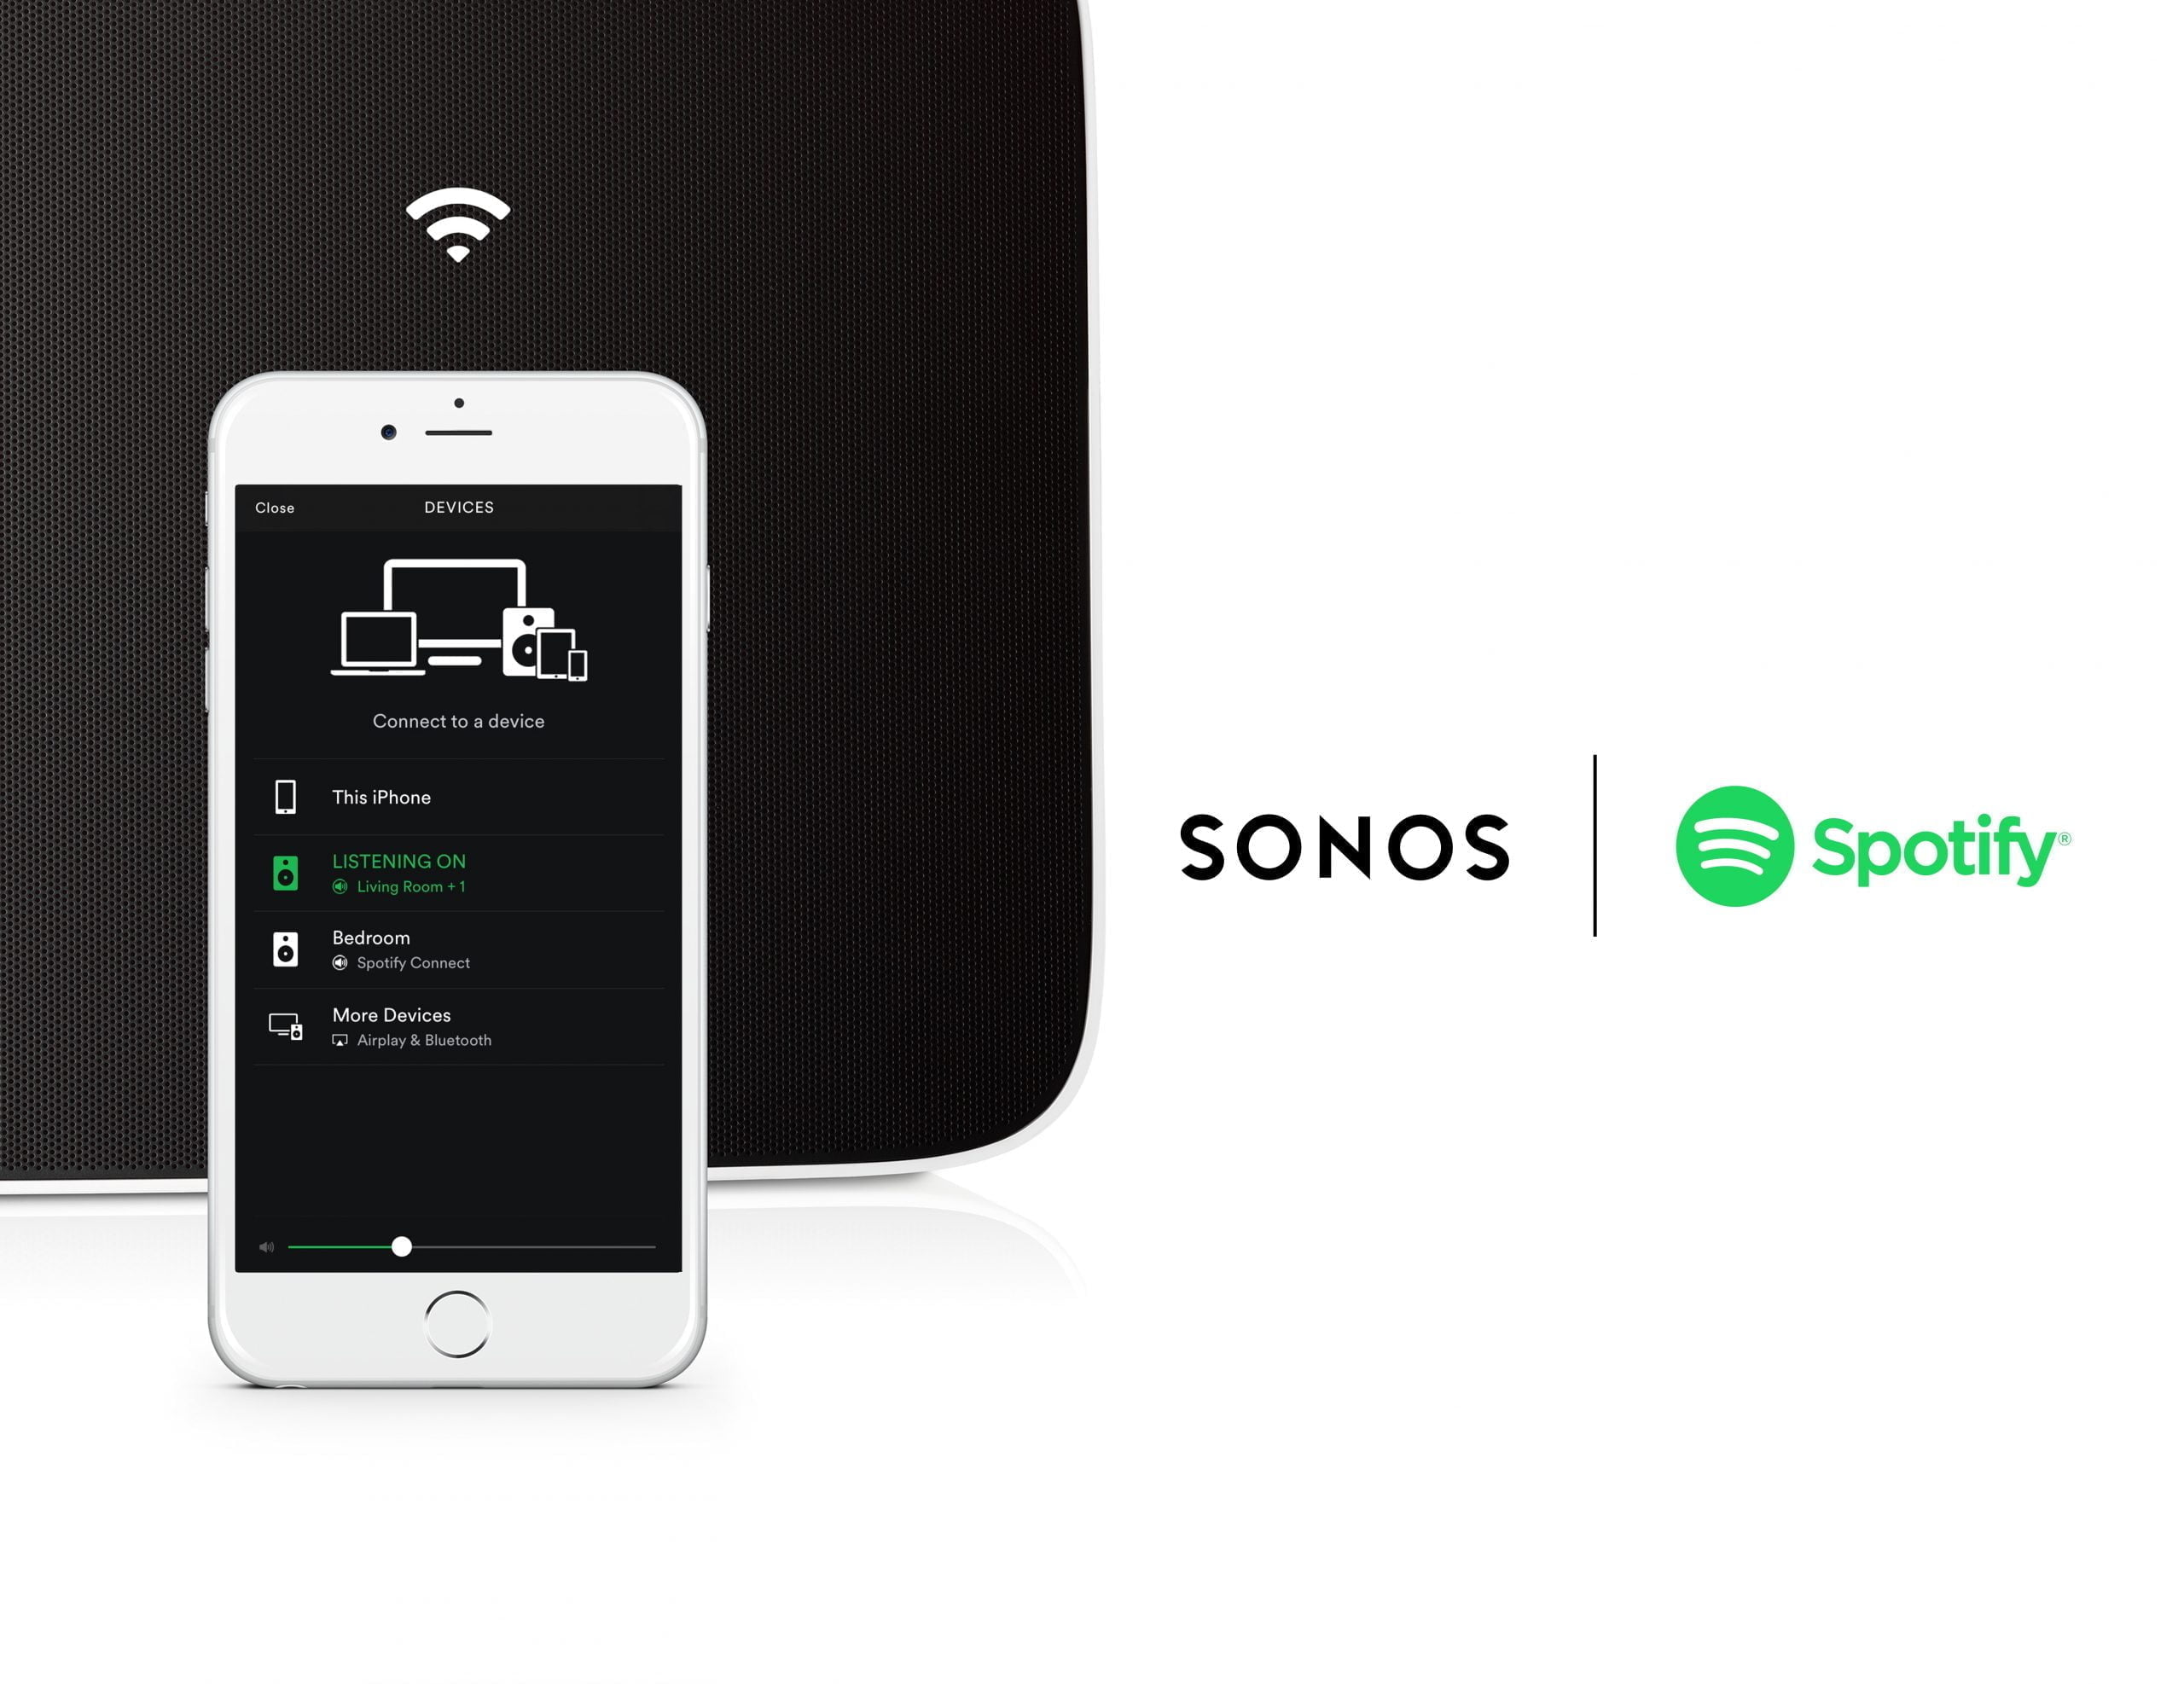 Nu kan Spotify bruges rigtigt Sonos MereMobil.dk